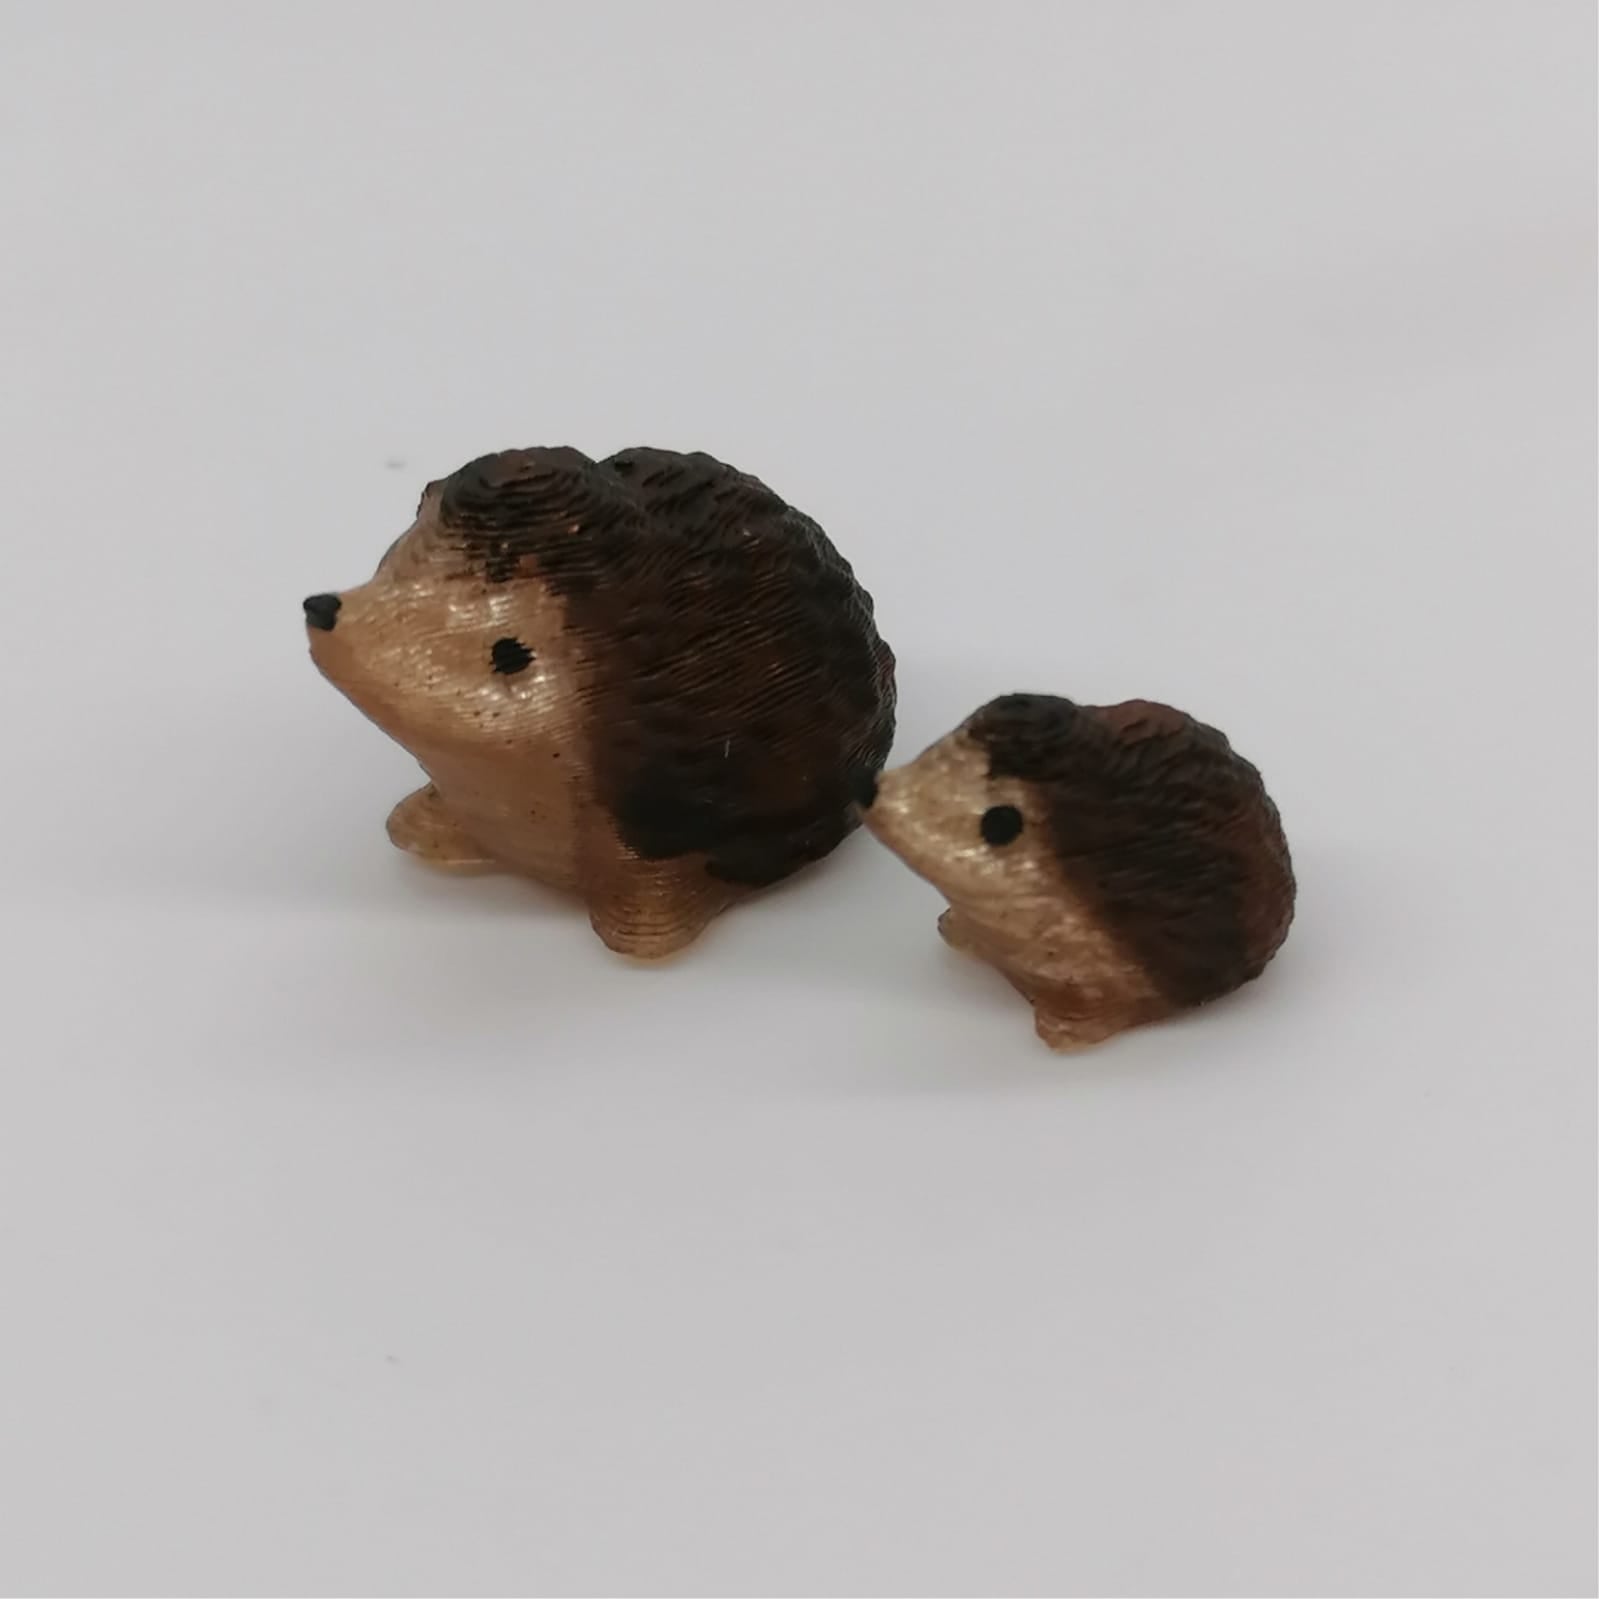 Tiere des Waldes Miniaturen im Maßstab 1:12 - Igel - Miniaturen